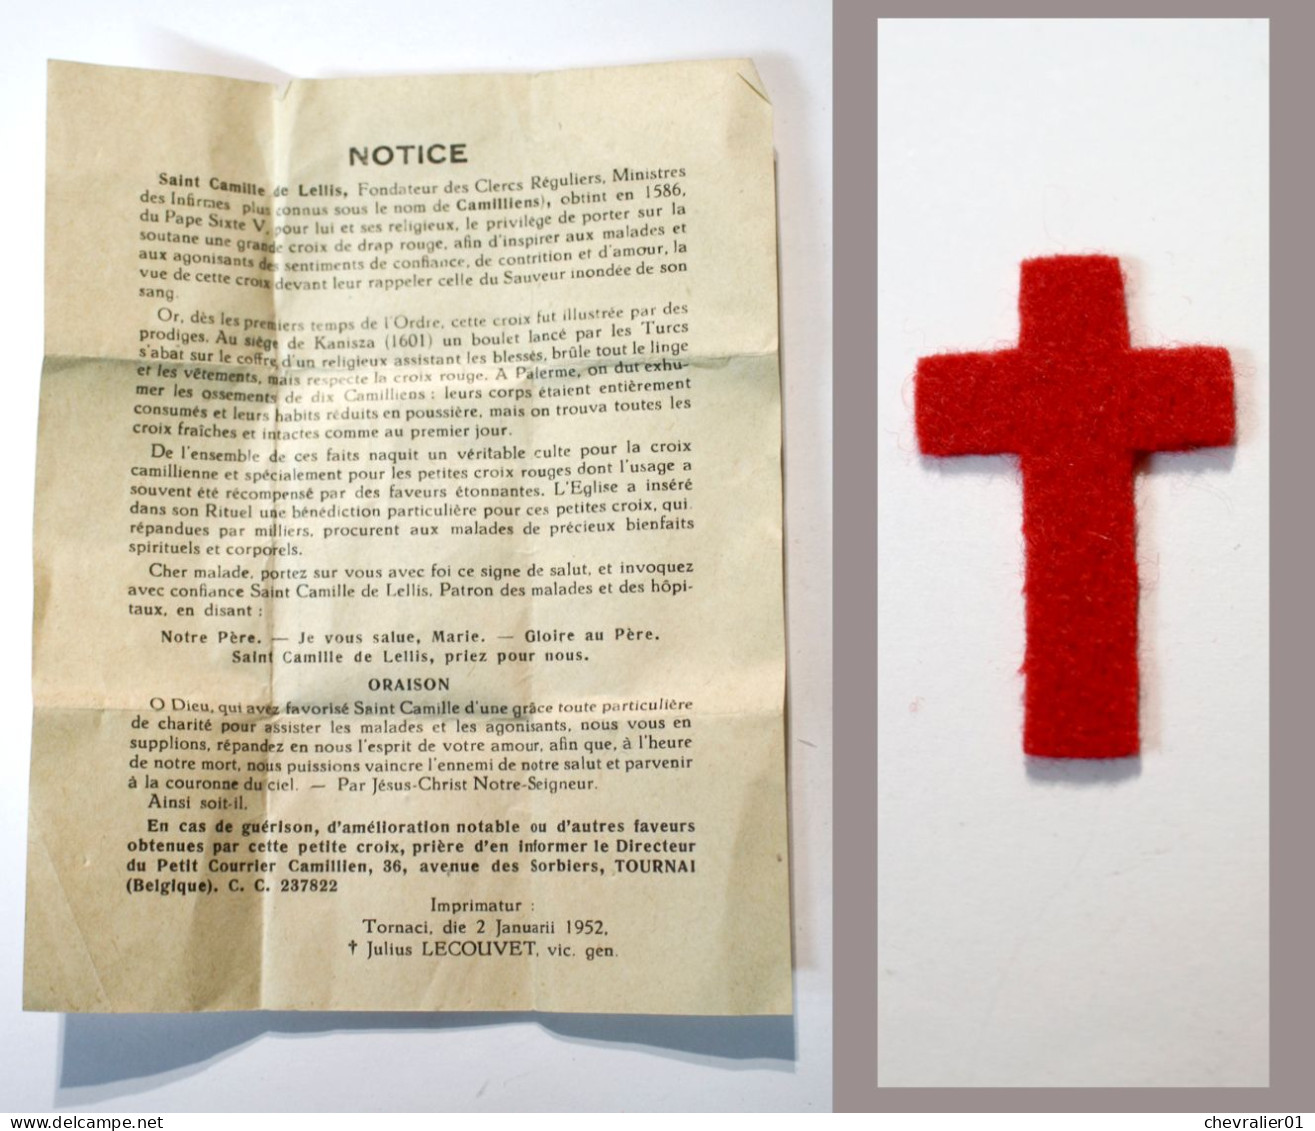 Religion_petite Croix Rouge De St Camille De Lellis Bénite Pour Les Malades_21-02 - Religion &  Esoterik